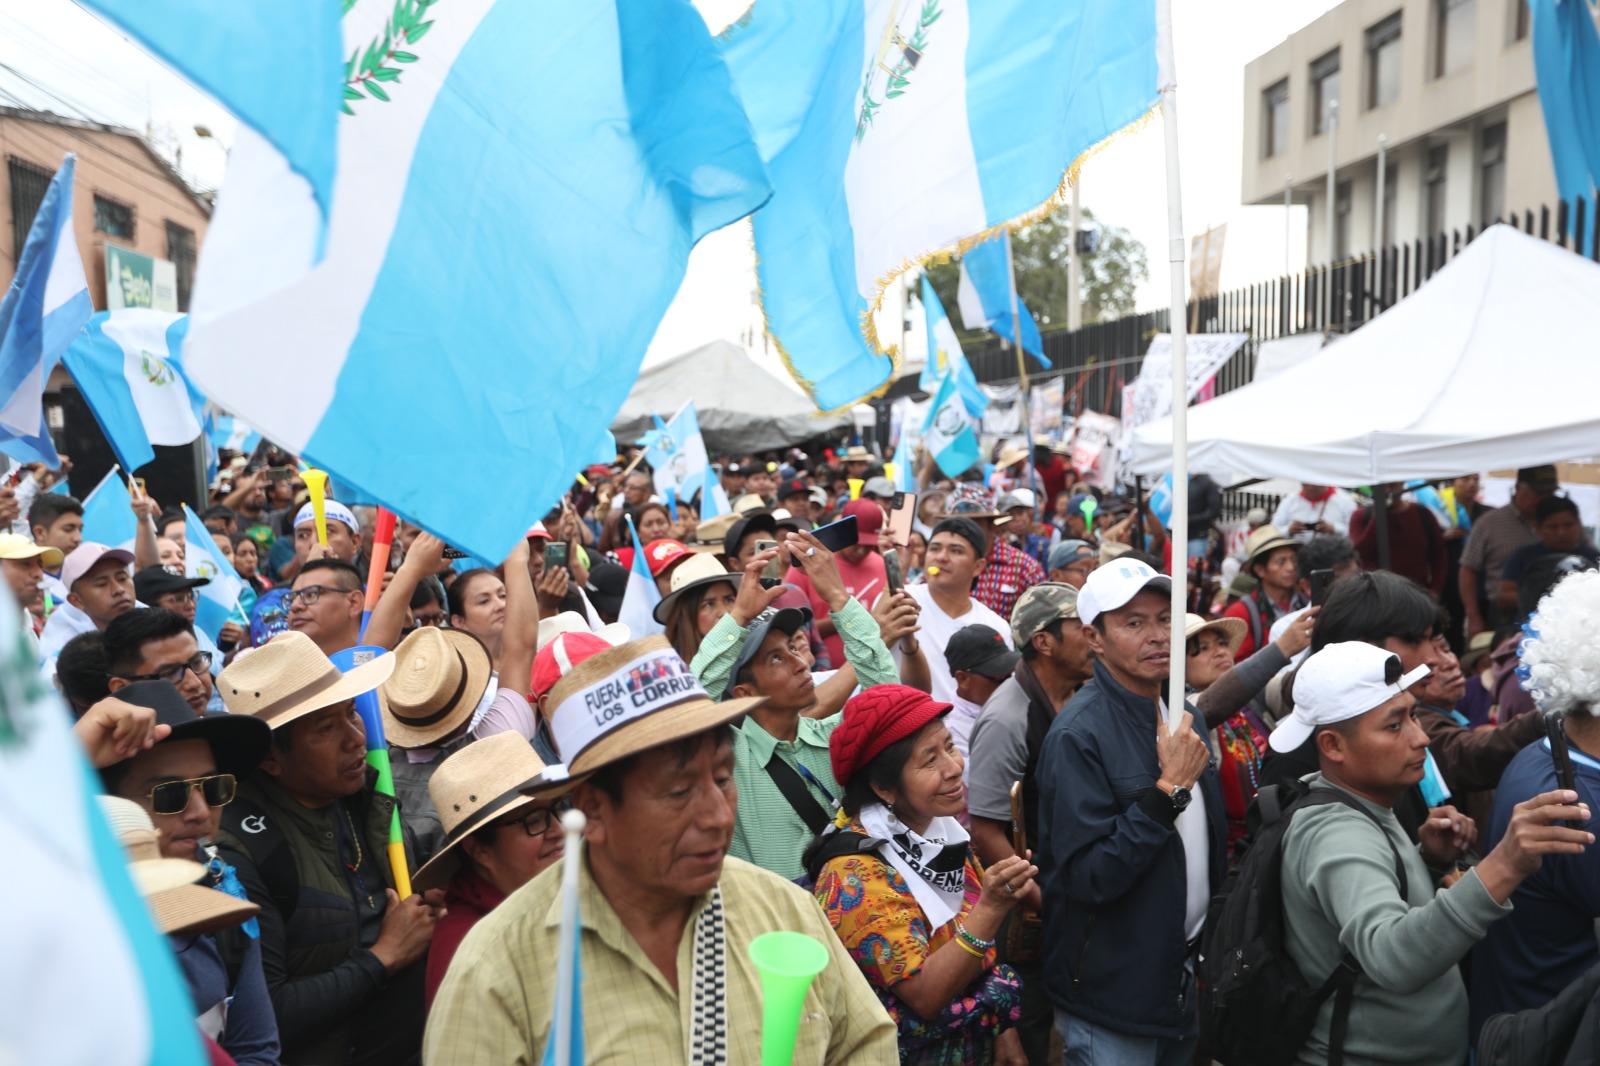 Este viernes 20 de octubre, los líderes de los 48 Cantones de Totonicapán brindaron una conferencia acerca de la situación de las manifestaciones, anunciaron una reorganización y mencionaron el posible levantamiento parcial de los bloqueos en el país. (Foto Prensa Libre: Byron Rivera)